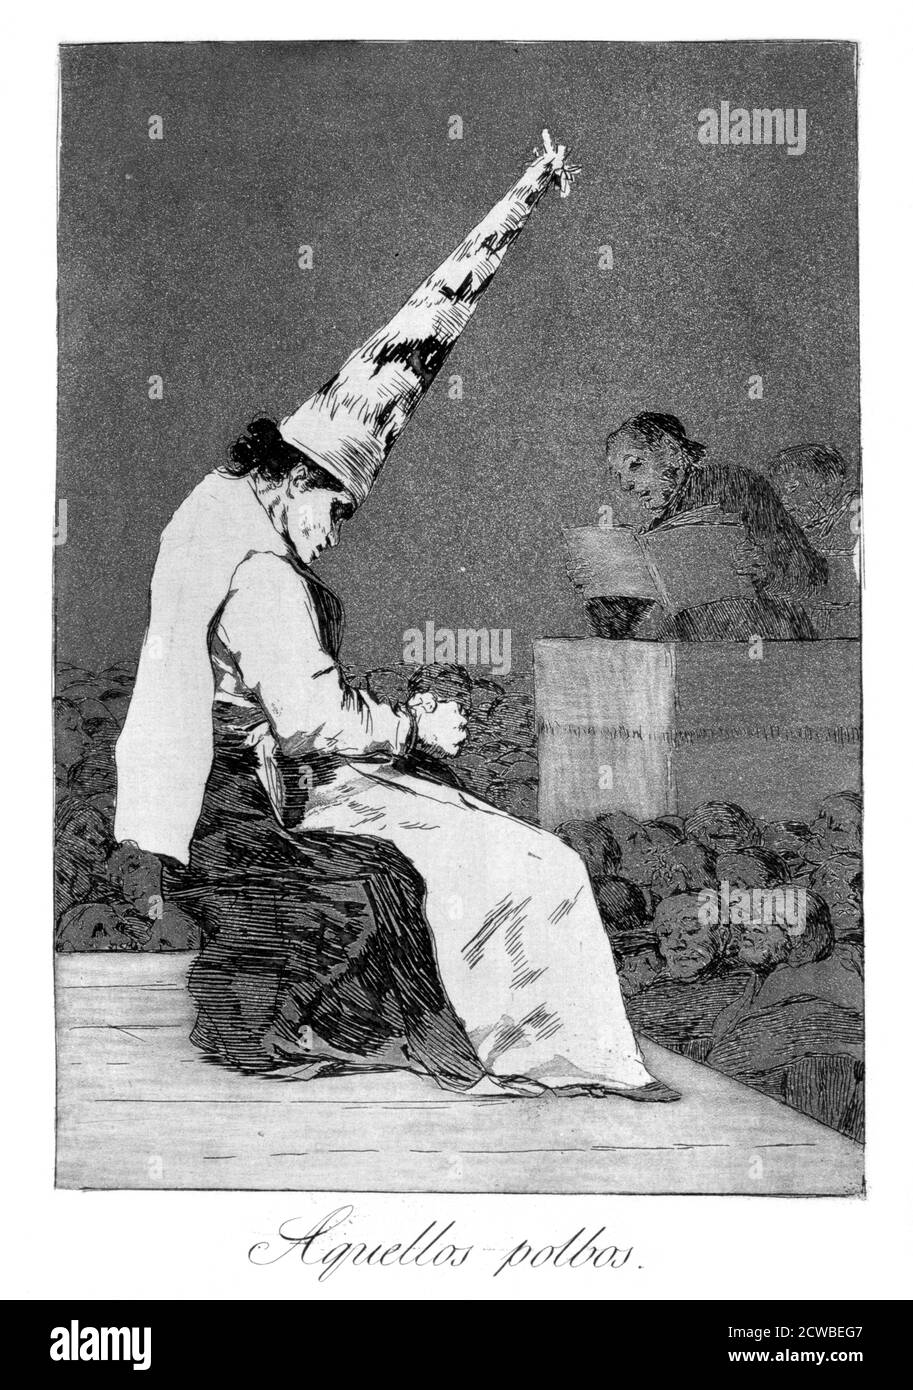 Ces taches de poussière, Perrico le paralyple', 1799 artiste: Francisco Goya. Perrico a pris de donner des potions d'amour aux amoureux, plaque 23 de 'Los Caprichos'. Los Caprichos est un ensemble de 80 tirages en aquatinte et gravure créés par l'artiste espagnol Francisco Goya en 1797 et 1798, et publiés comme un album en 1799. Banque D'Images